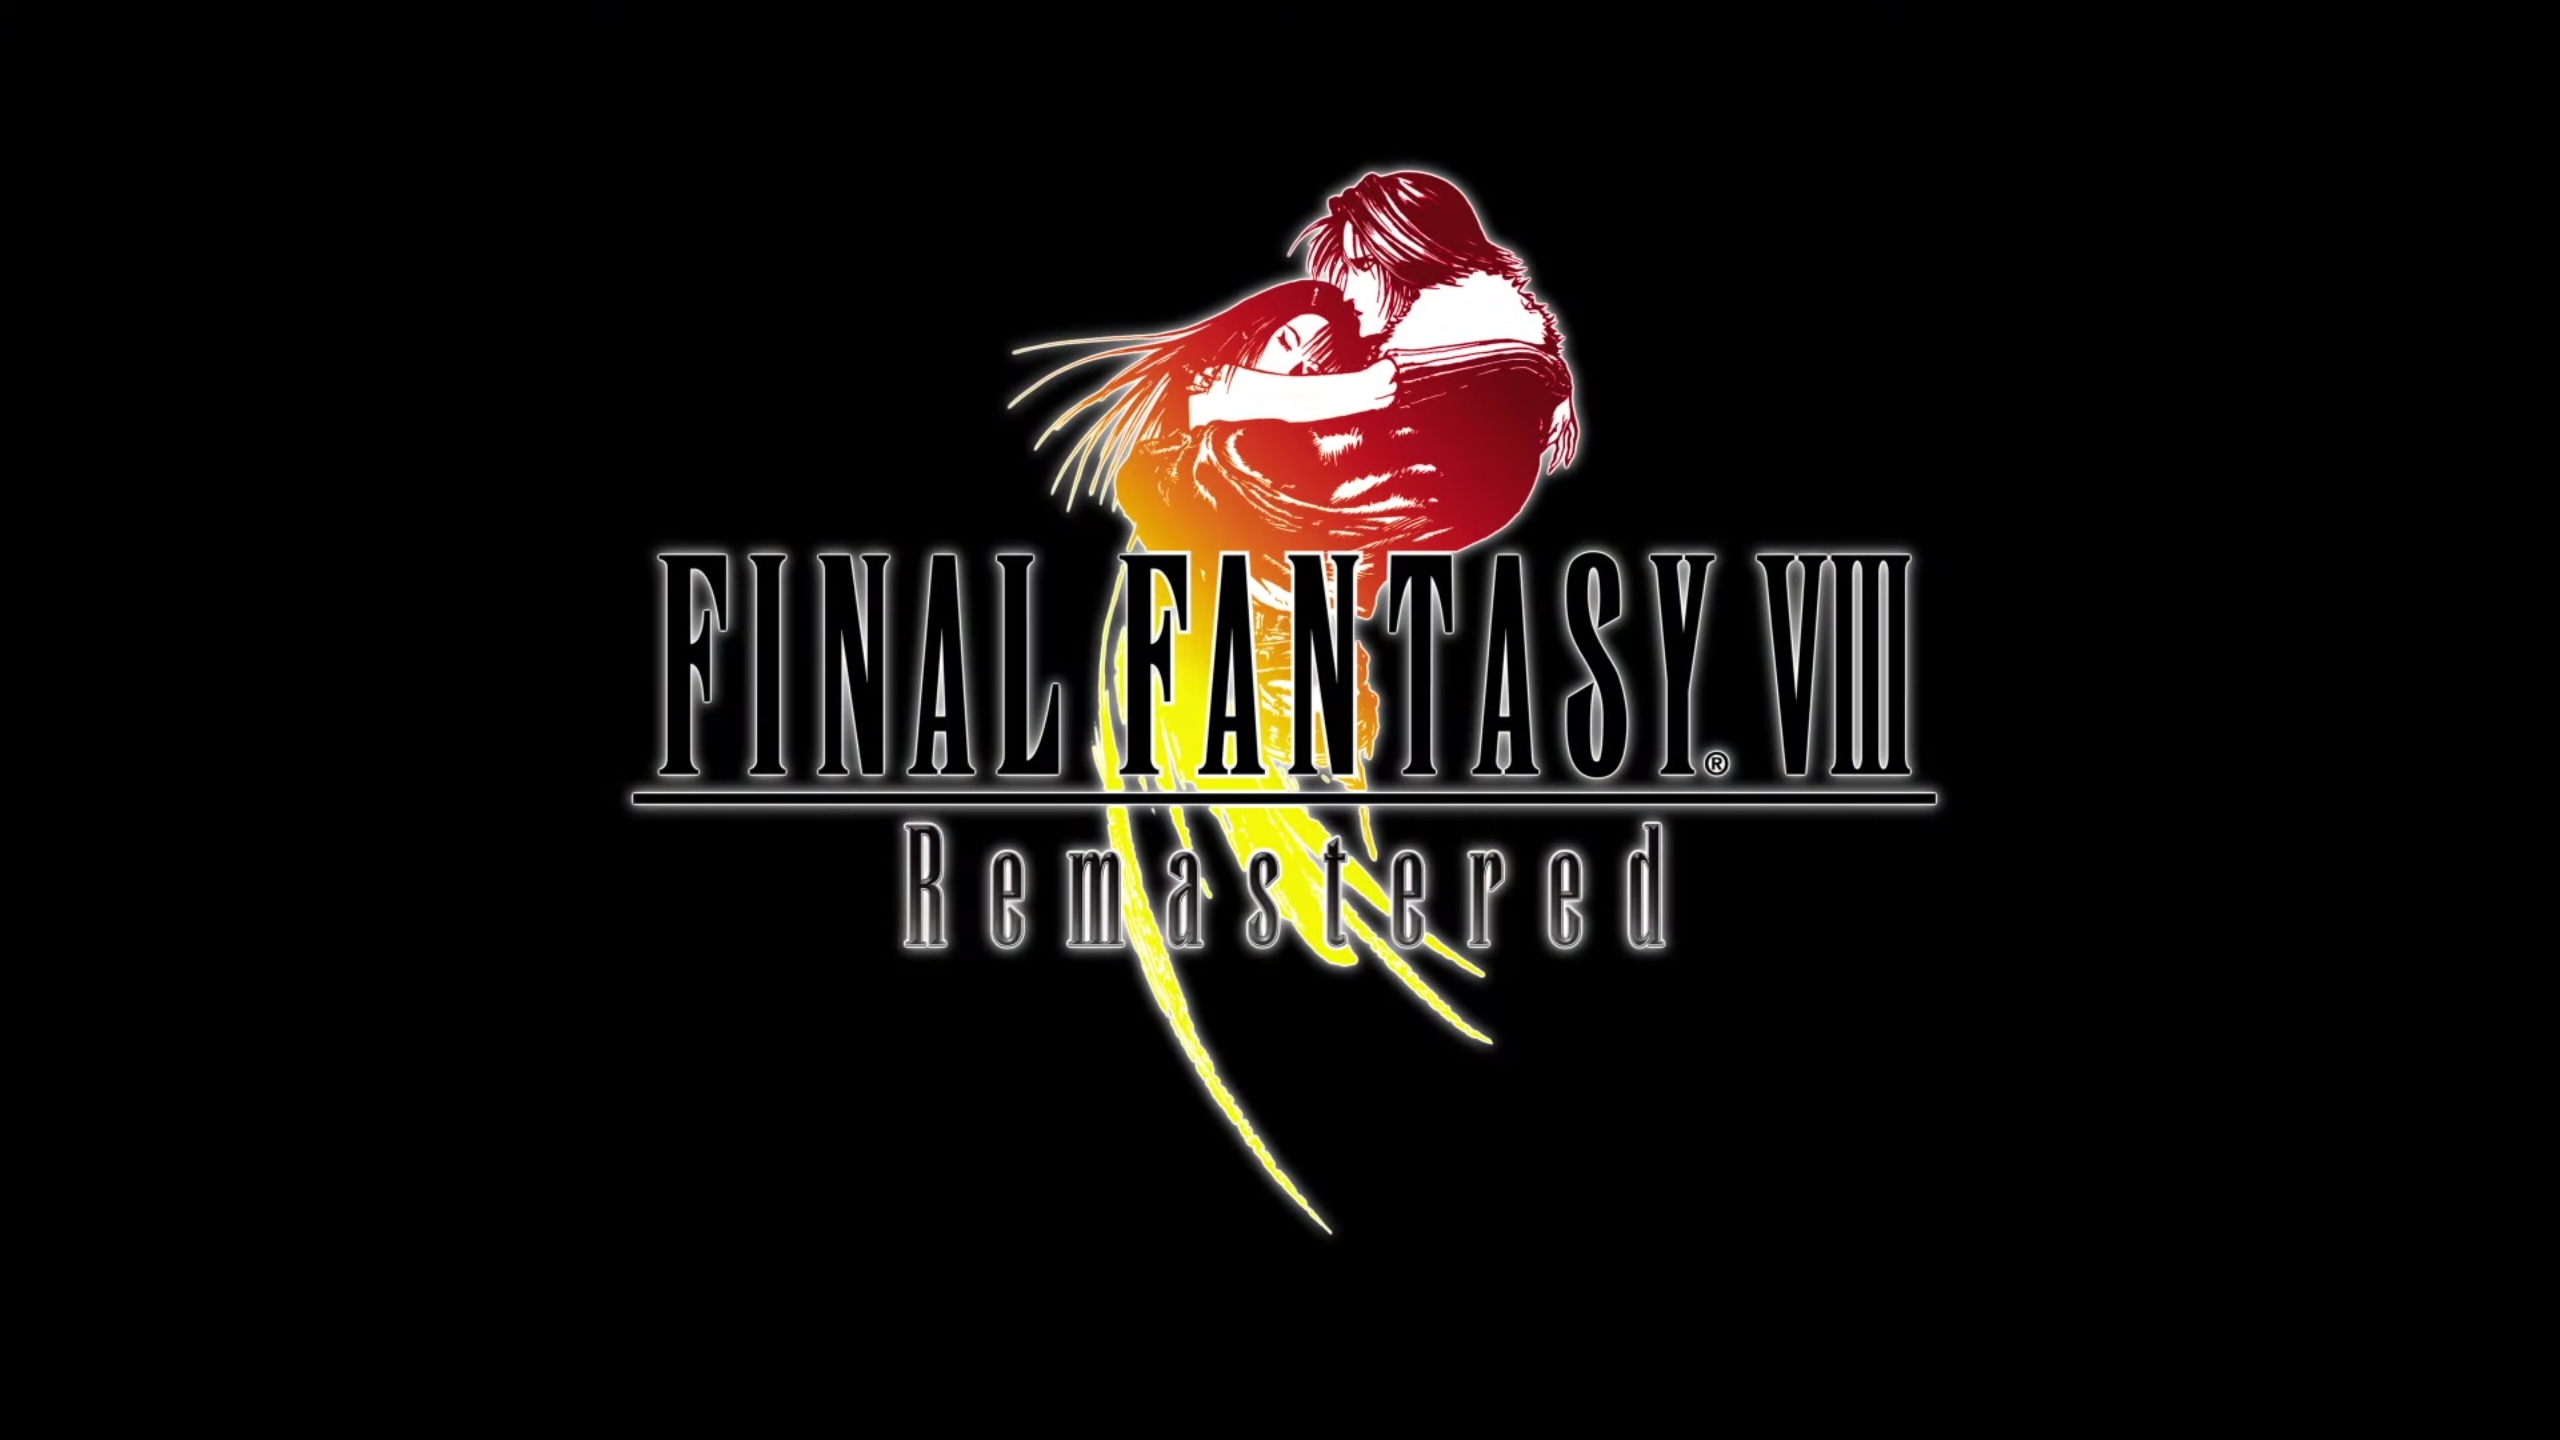 FINAL FANTASY VIII Remastered выйдет на ПК и консолях 3 сентября - новый трейлер геймплея